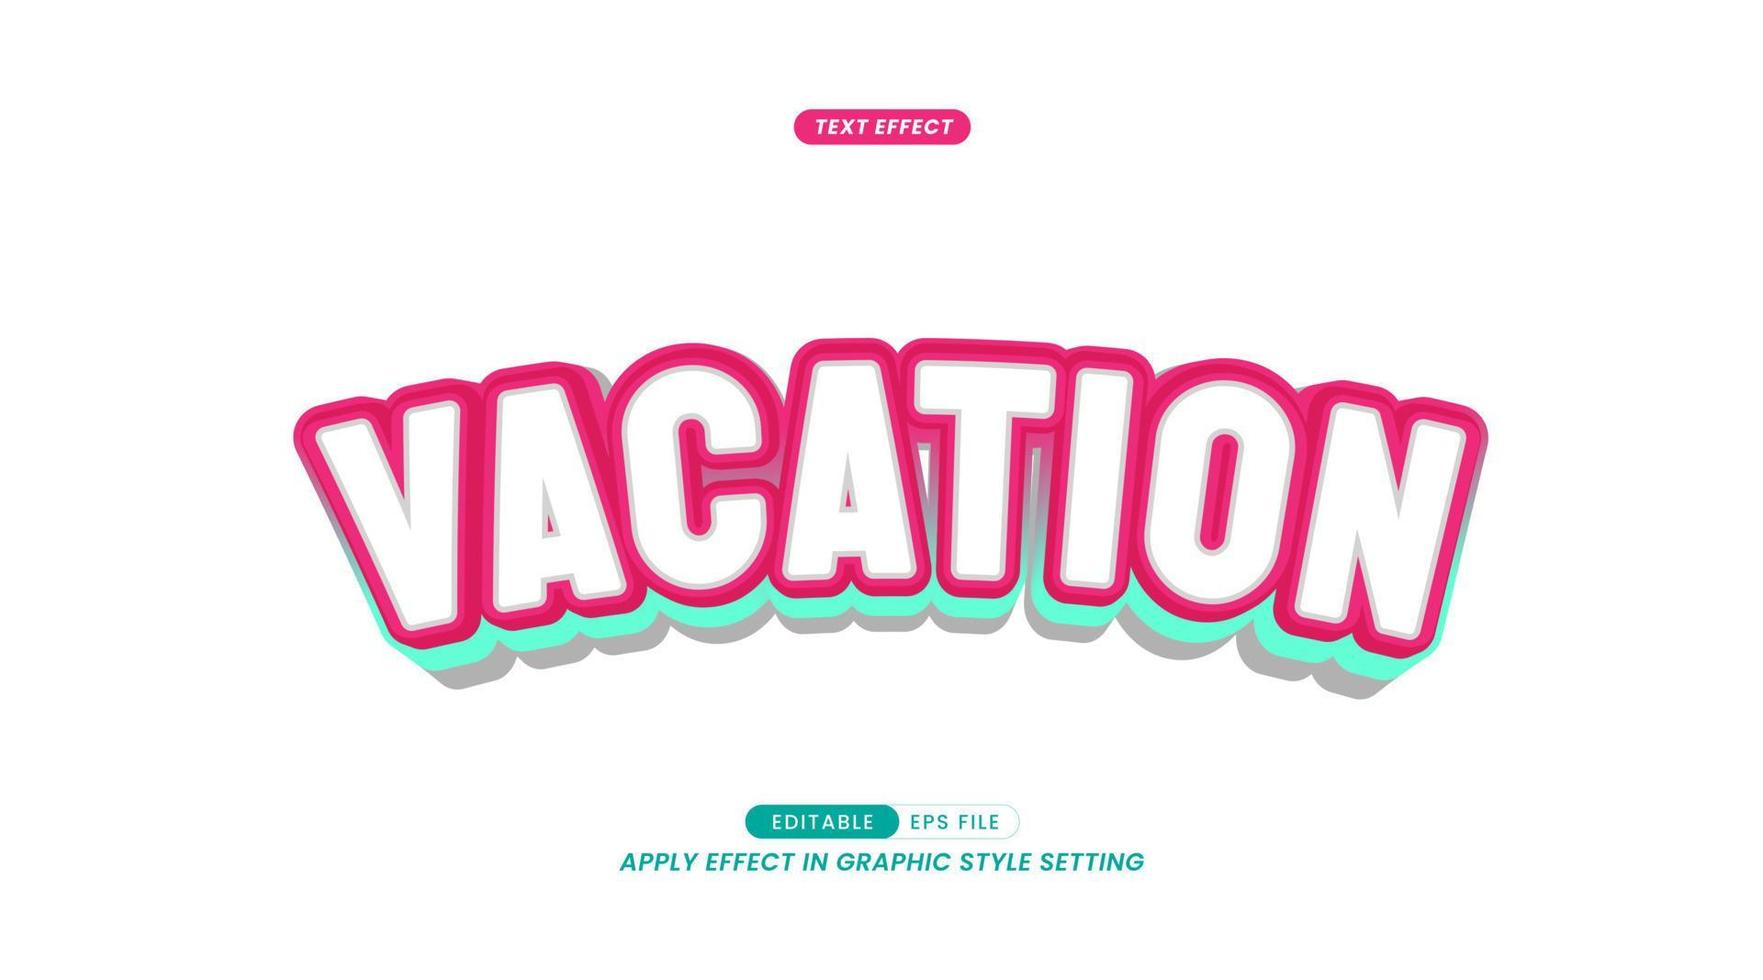 effet de texte - slogan de vacances. avec des modèles de lettres colorées en 3D. vecteur